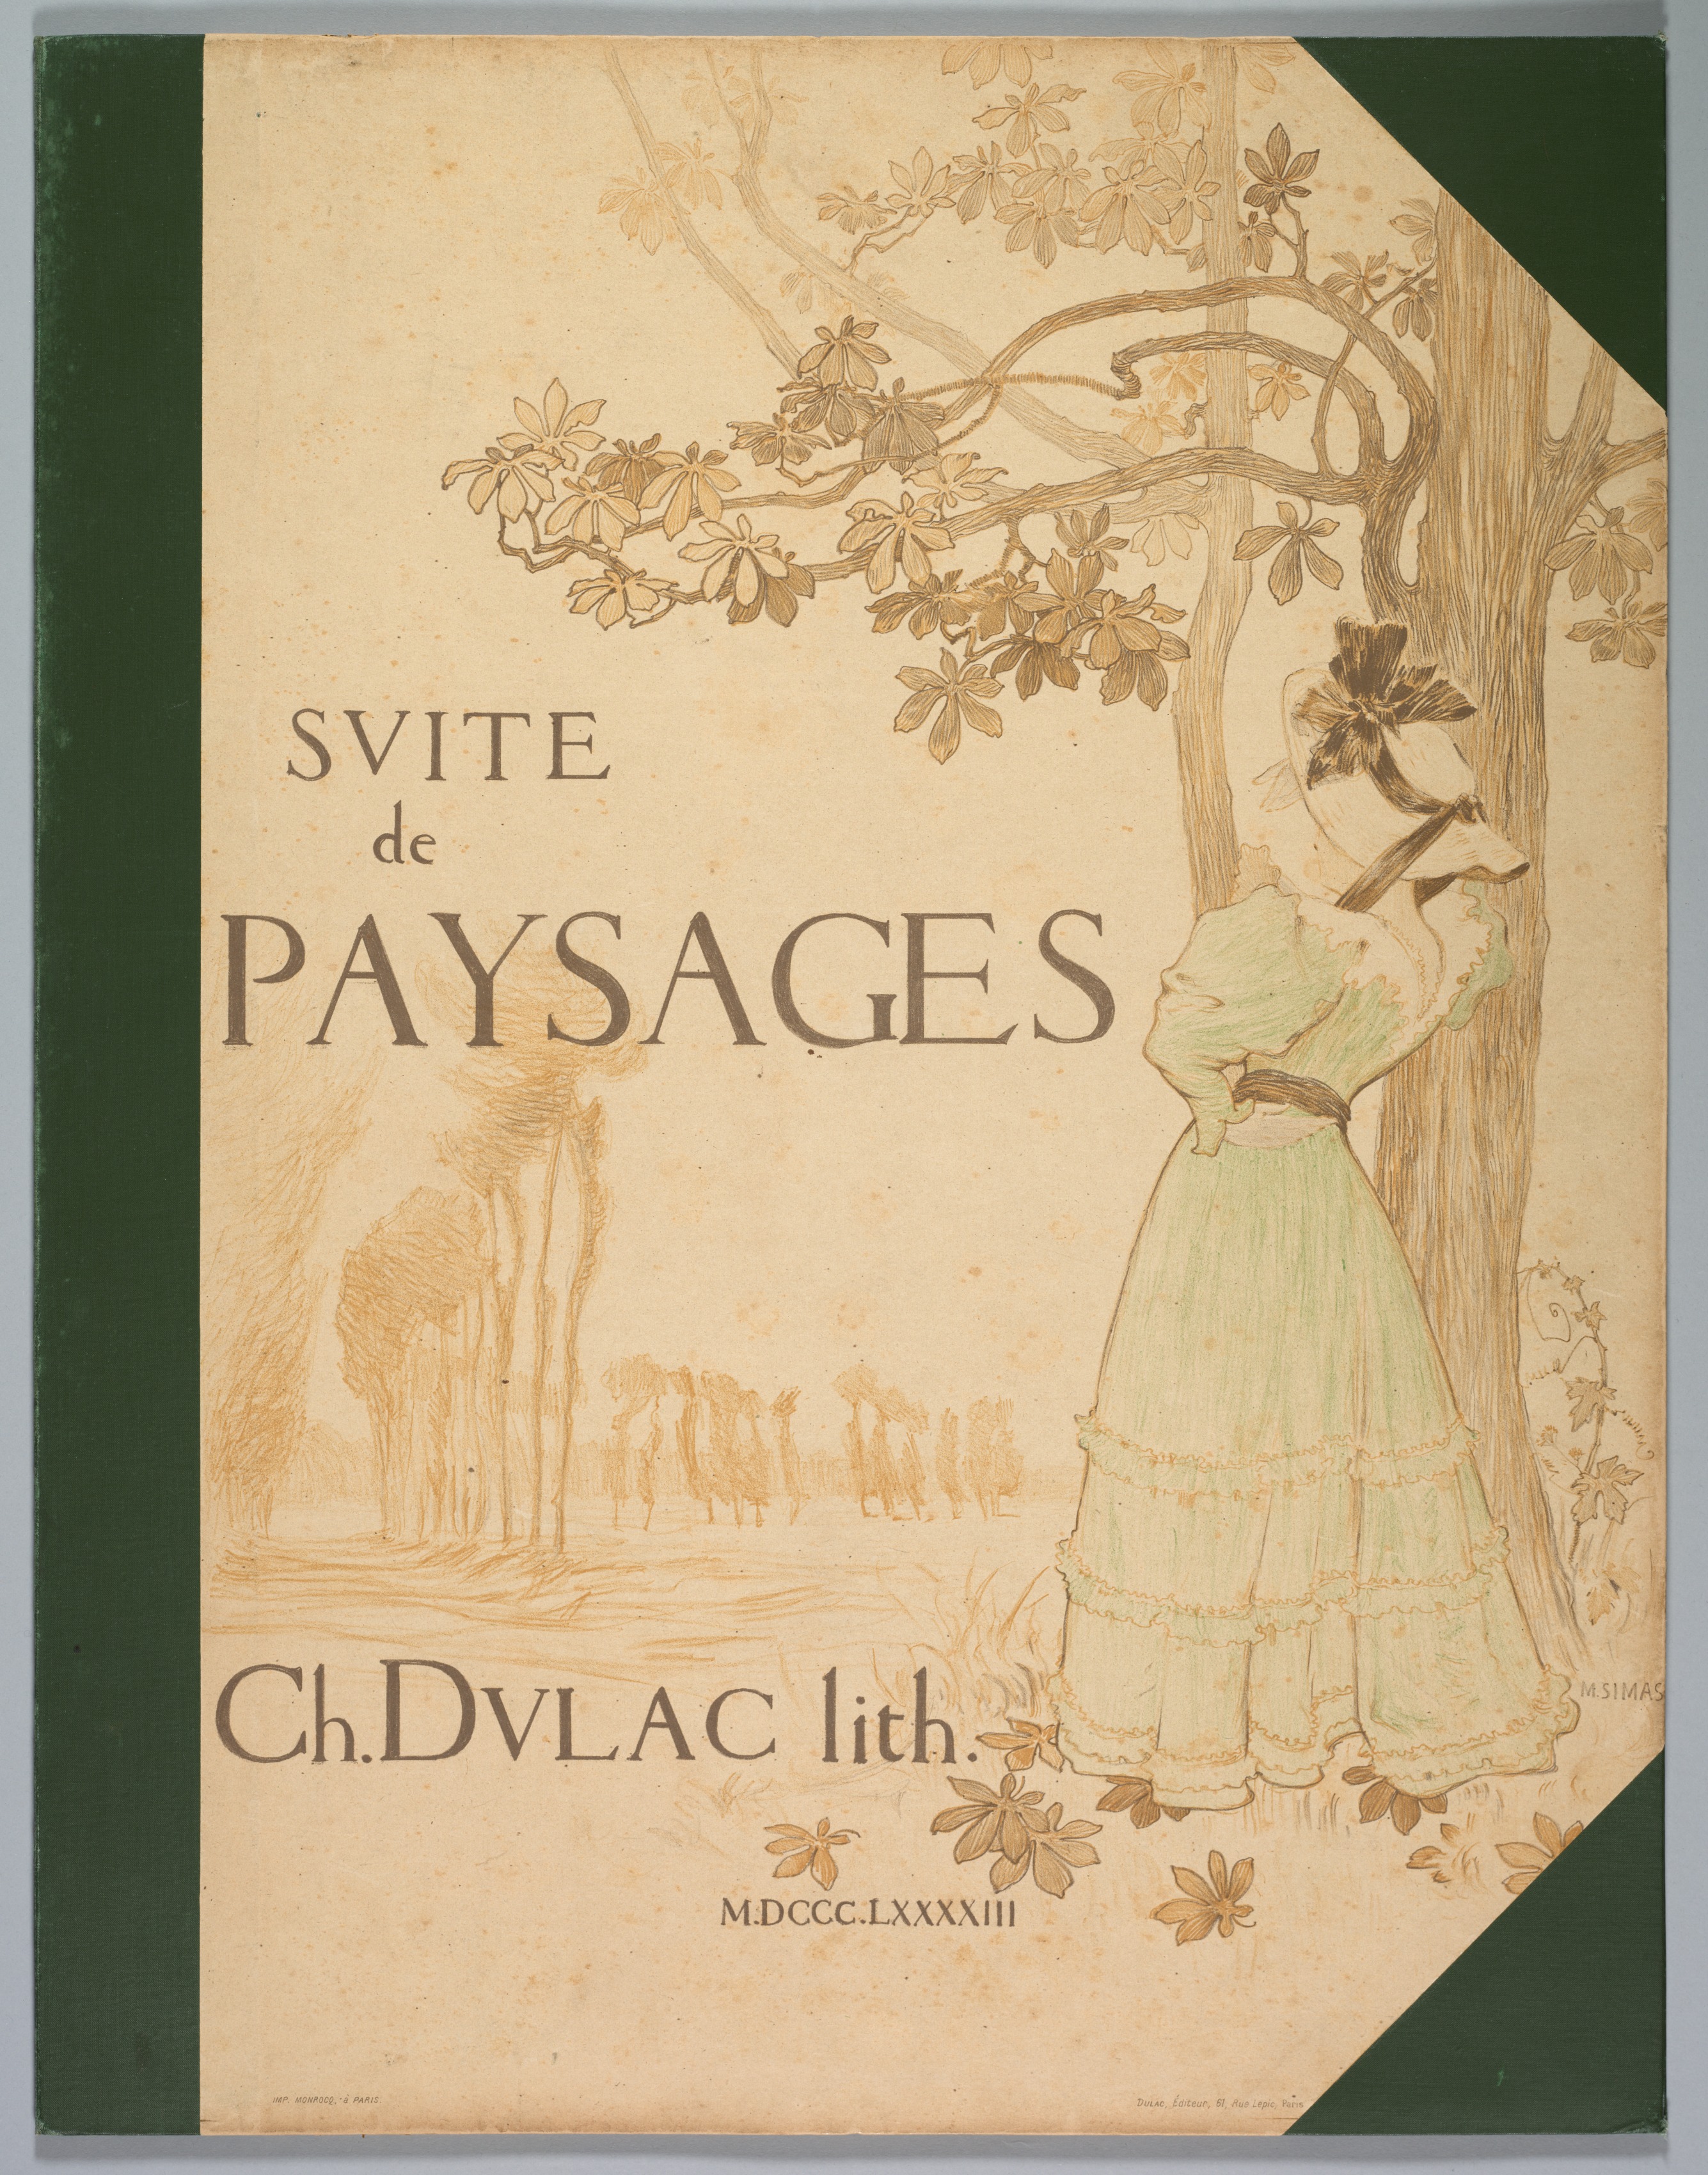 Suite de Paysages: Cover